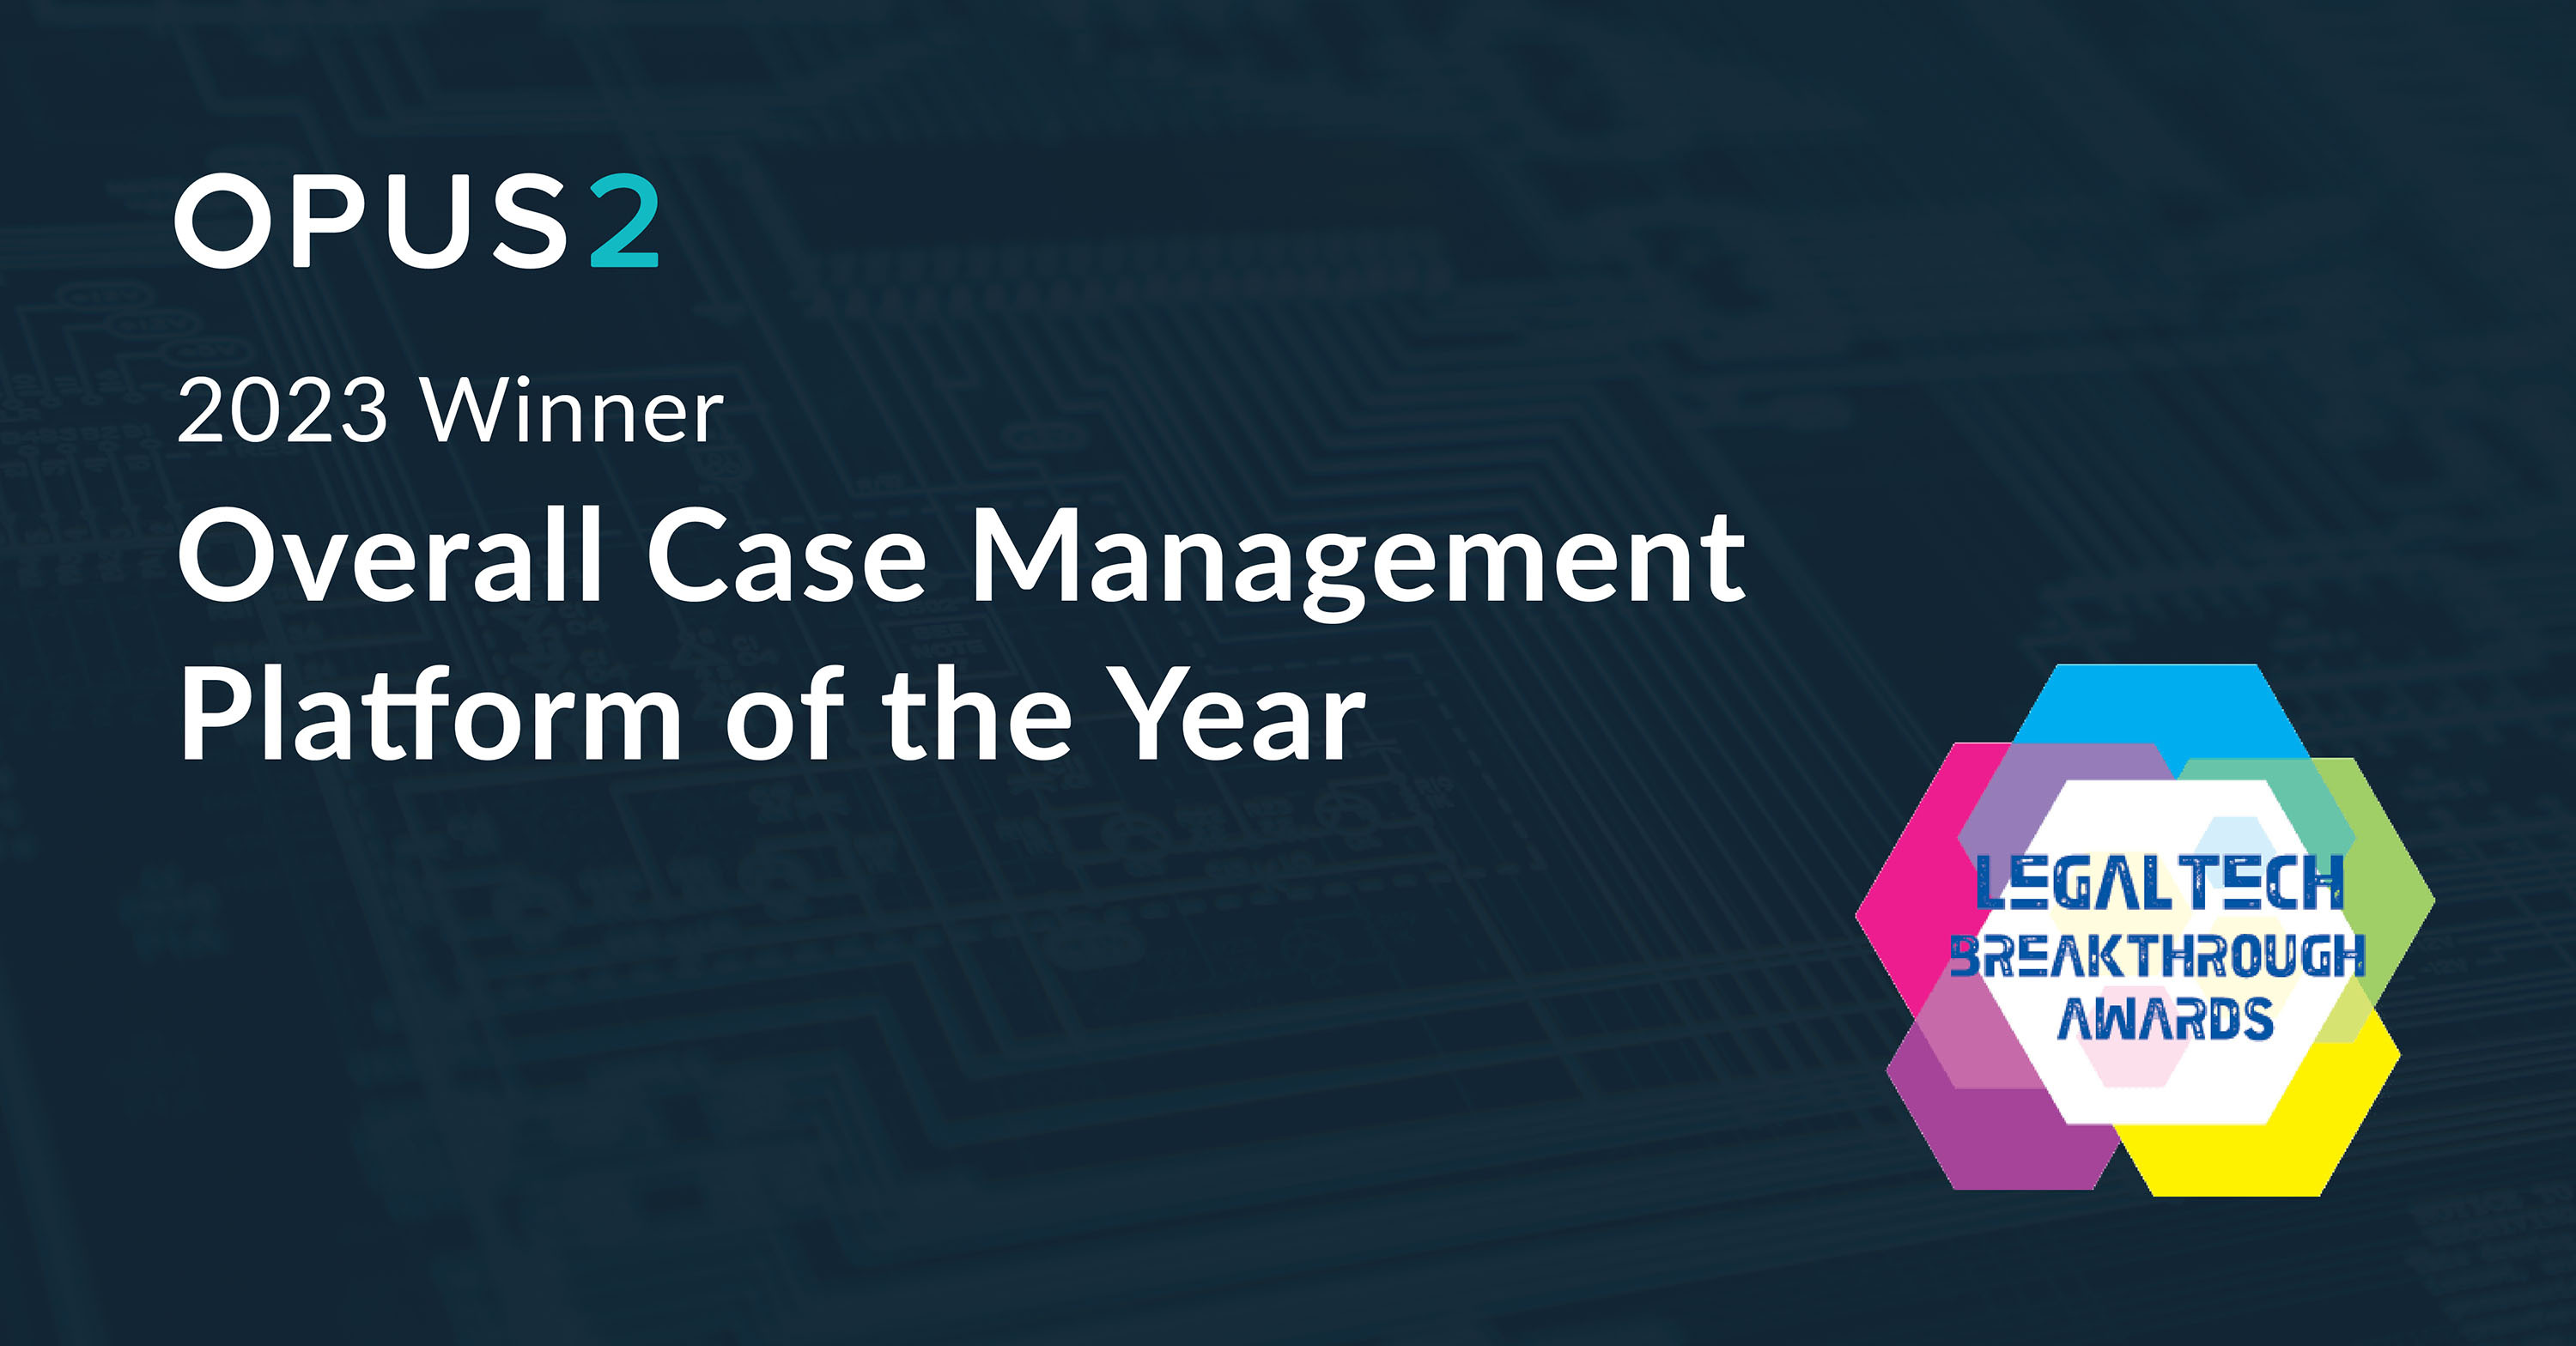 Opus 2 Case Management Software Wins LegalTech Breakthrough Award